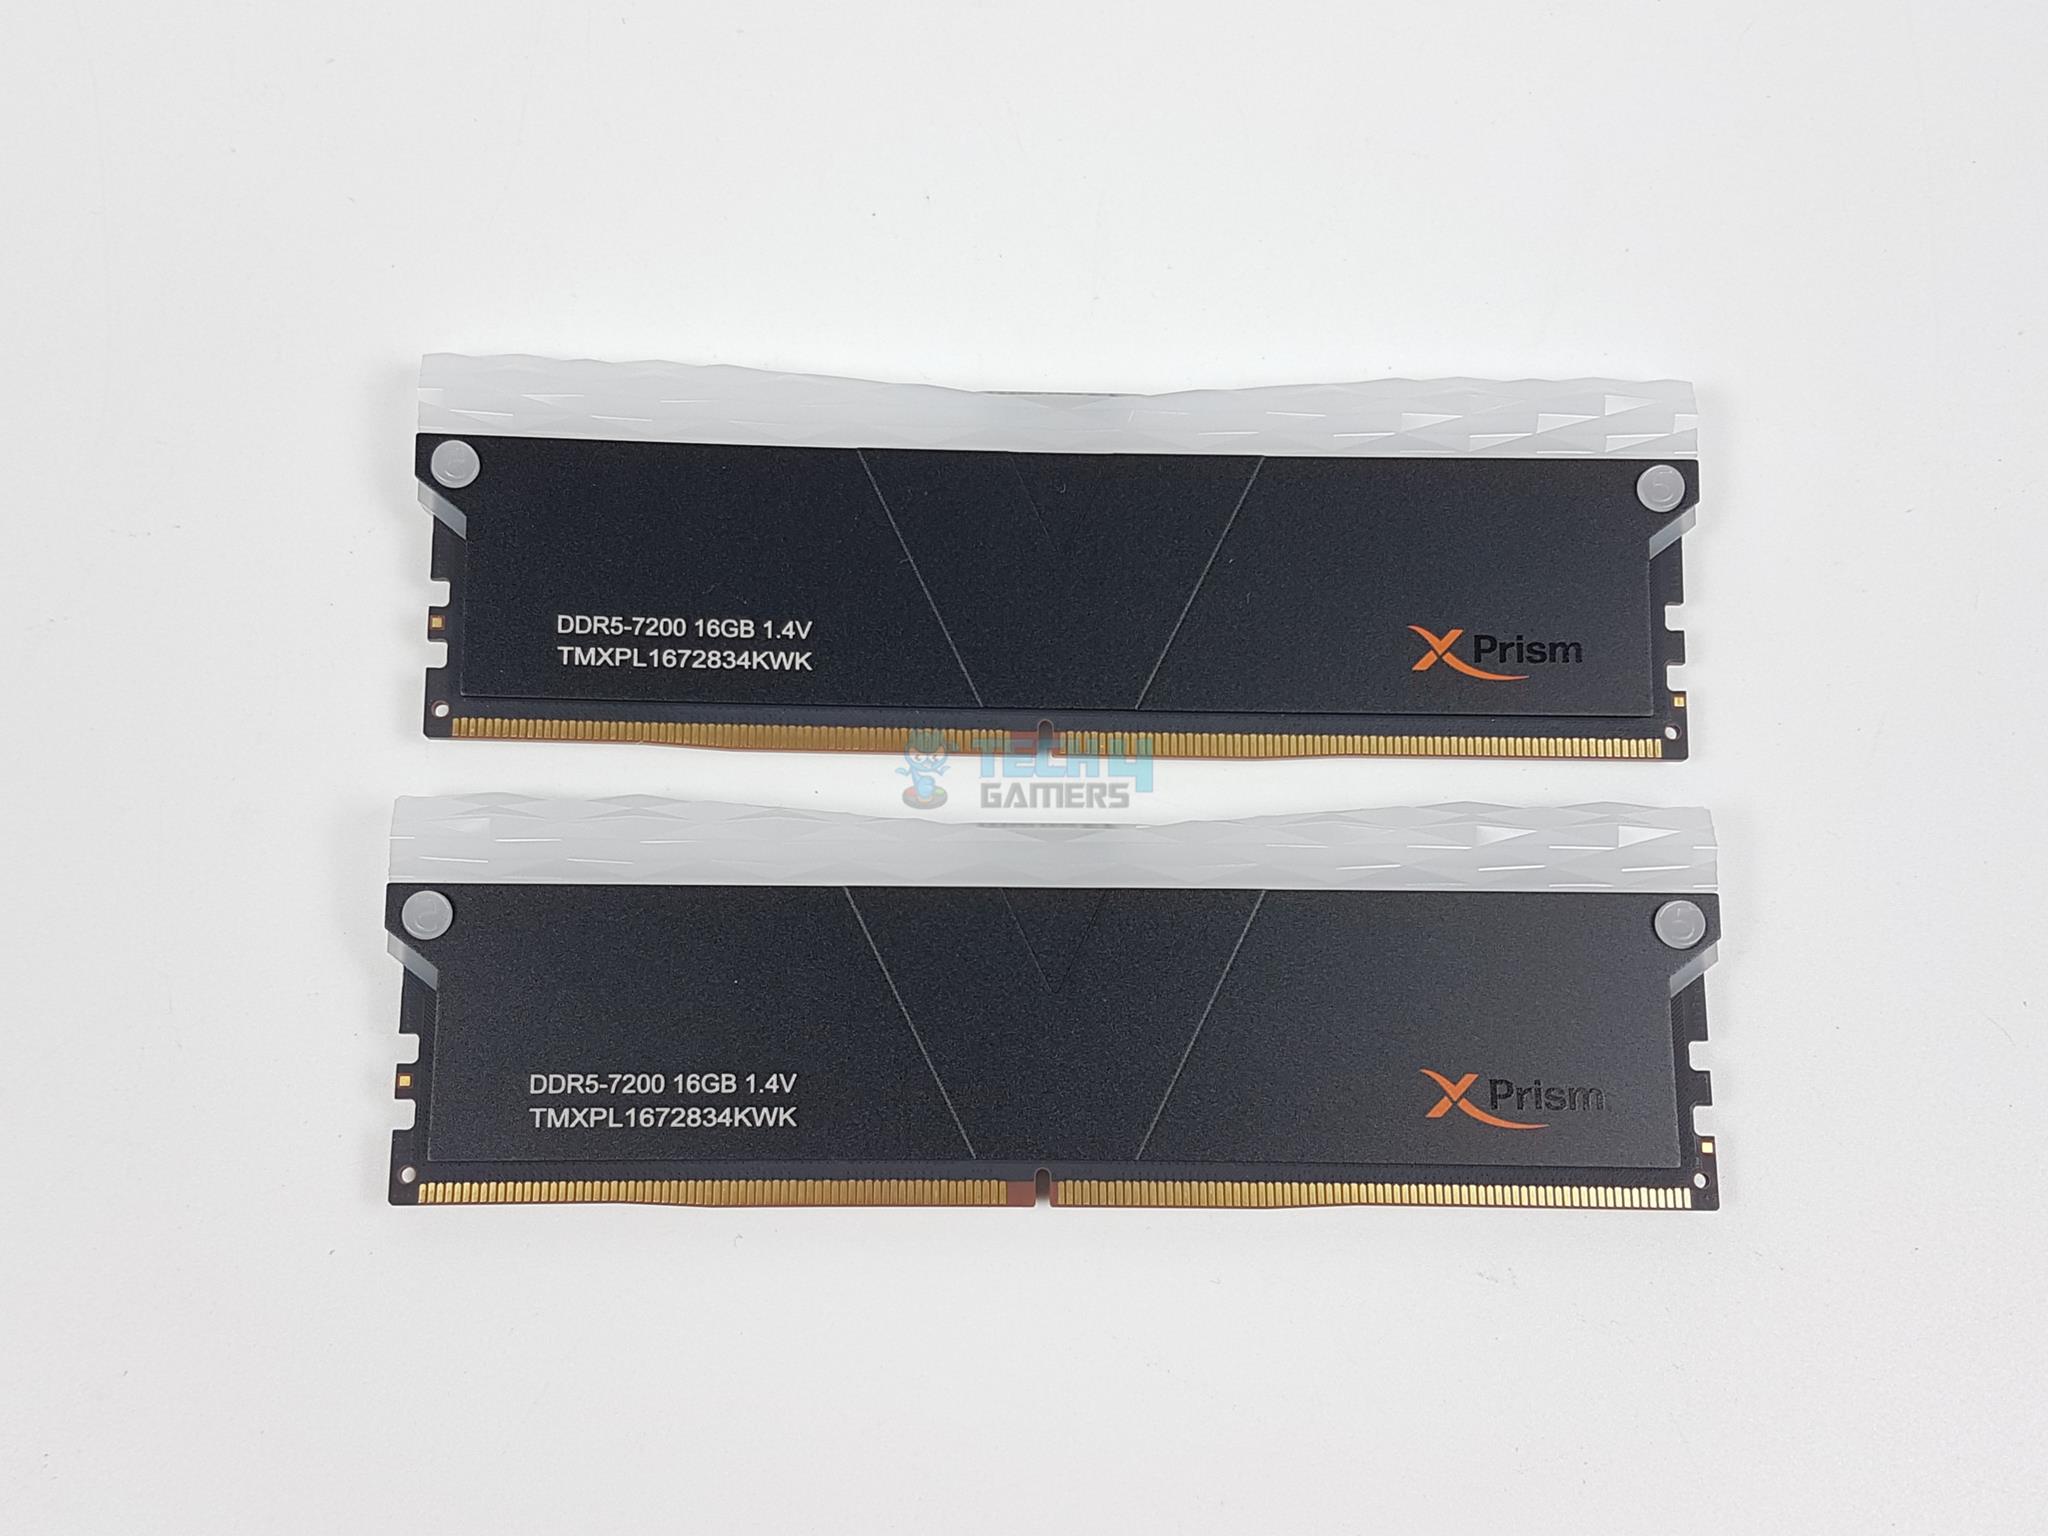 V-Color Manta xPrism RGB DDR5 32GB — Front